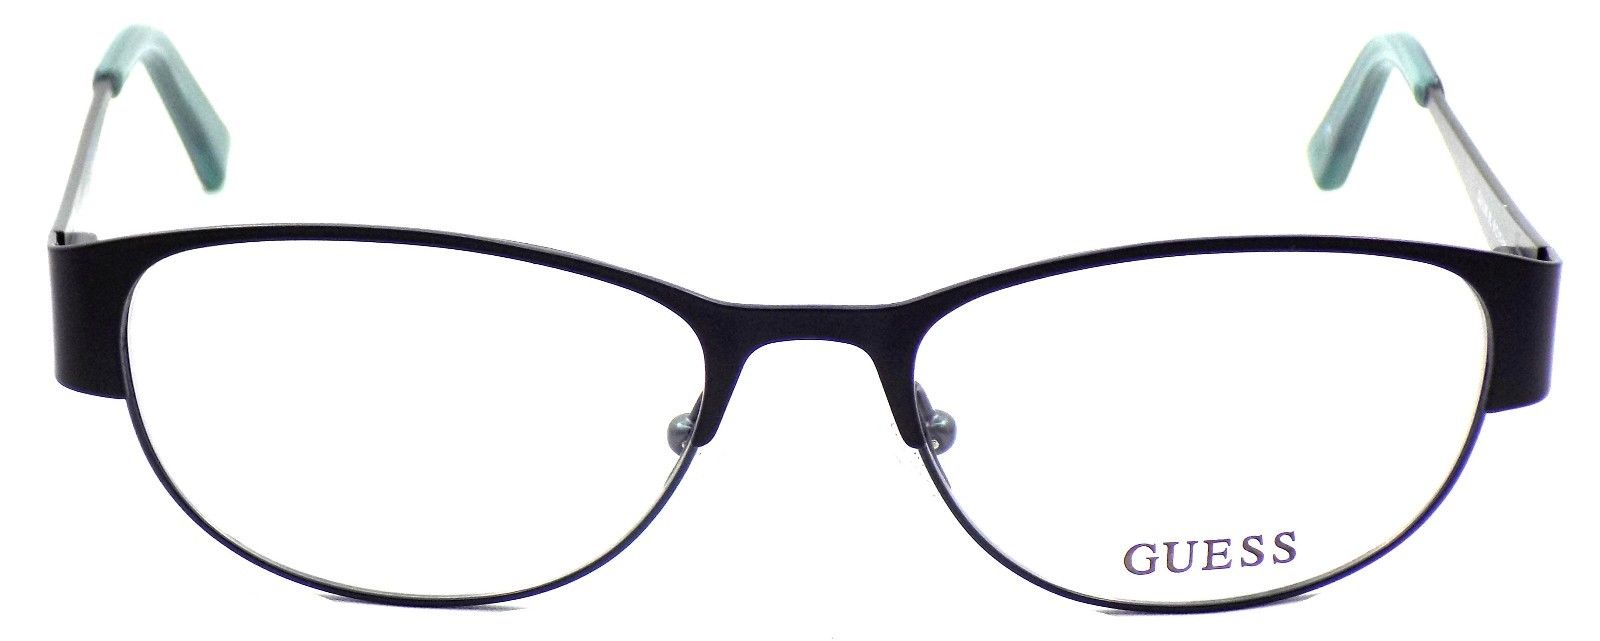 2-GUESS GU2330 BL Women's Eyeglasses Frames 51-17-135 Blue / Green + CASE-715583590922-IKSpecs